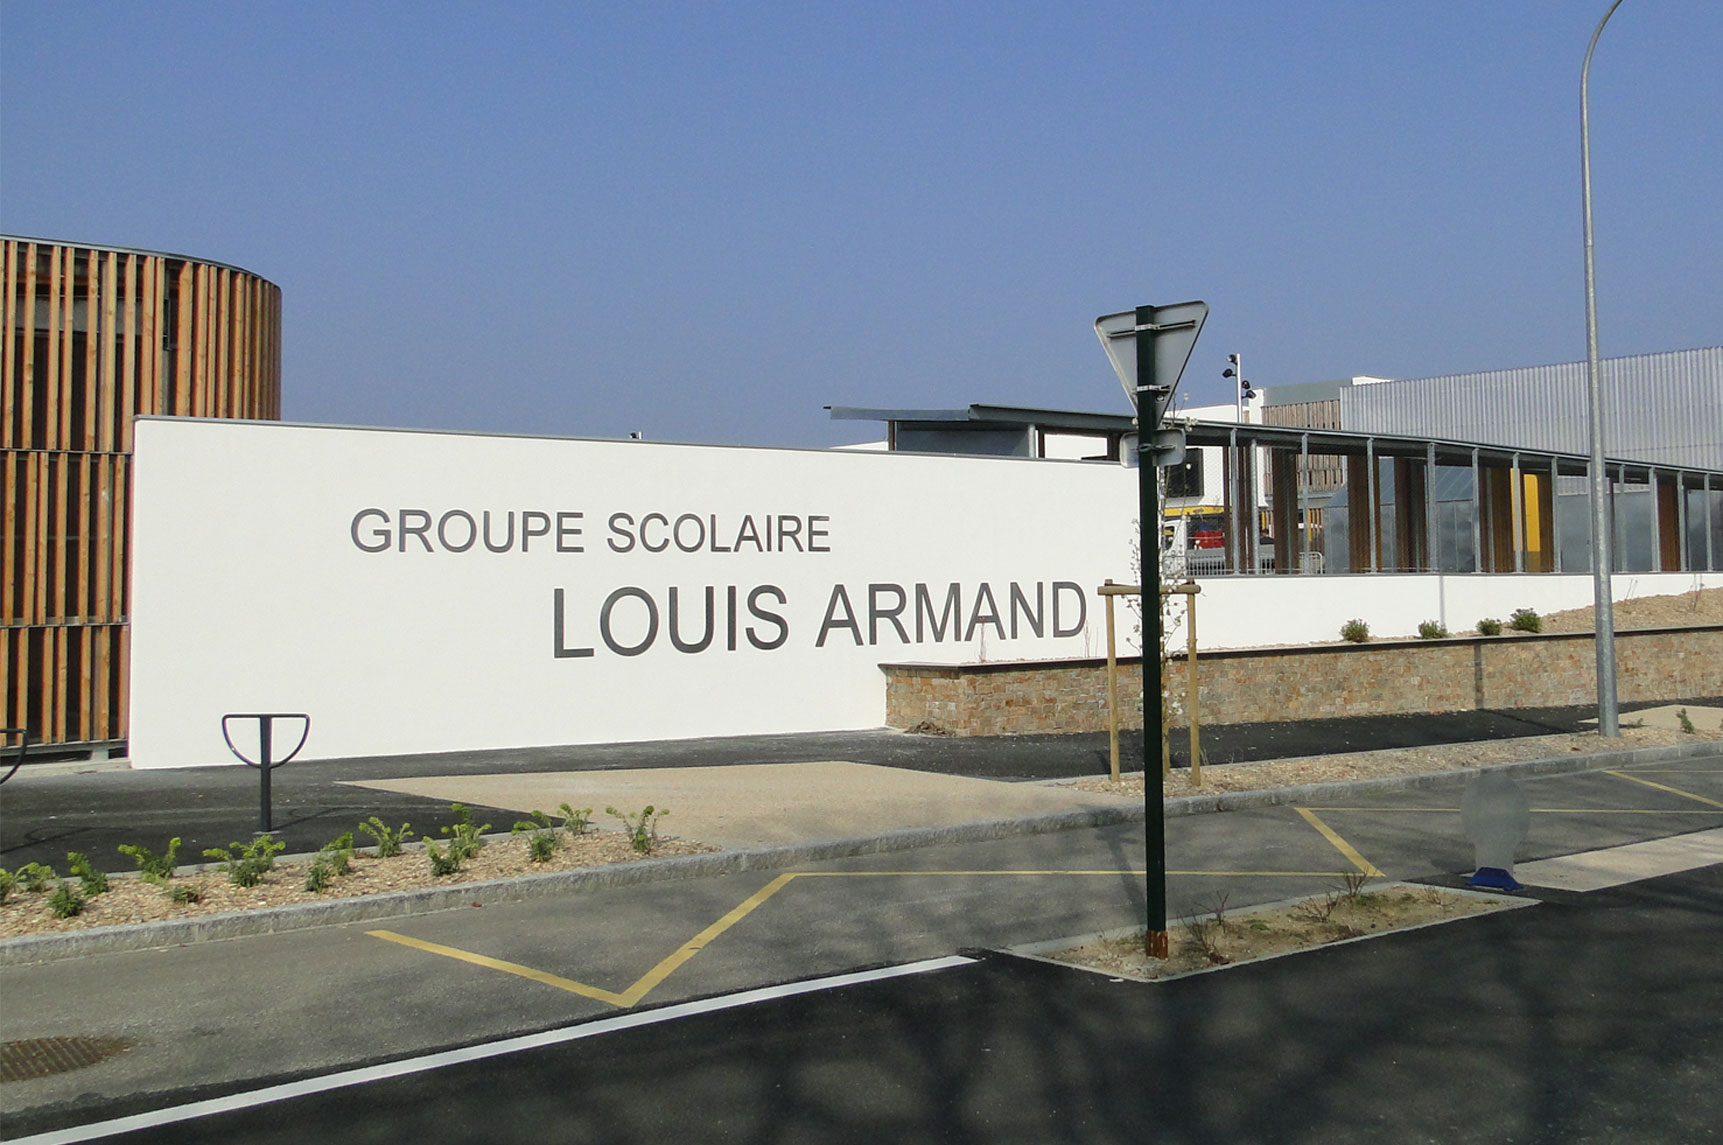 Groupe scolaire Louis Armand - Carquefou - 2012